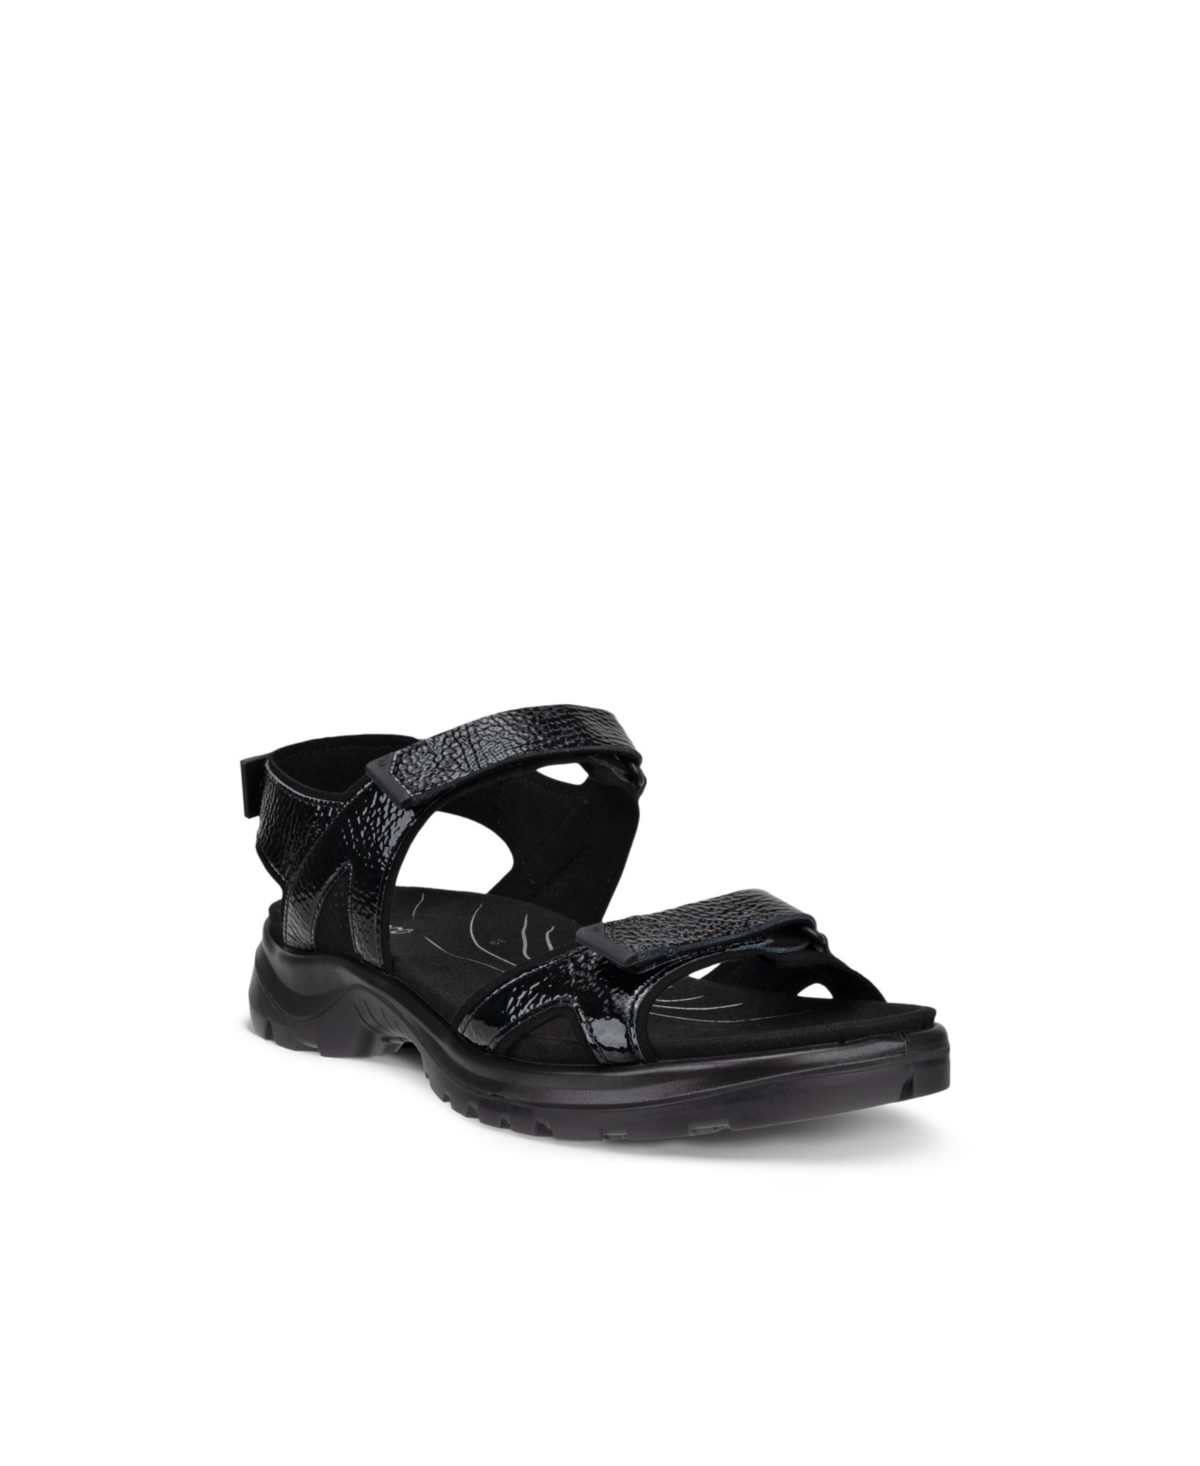 Ecco Women's Yucatan 2.0 Quick Fasten 3 Strap Sandals In Black Patent